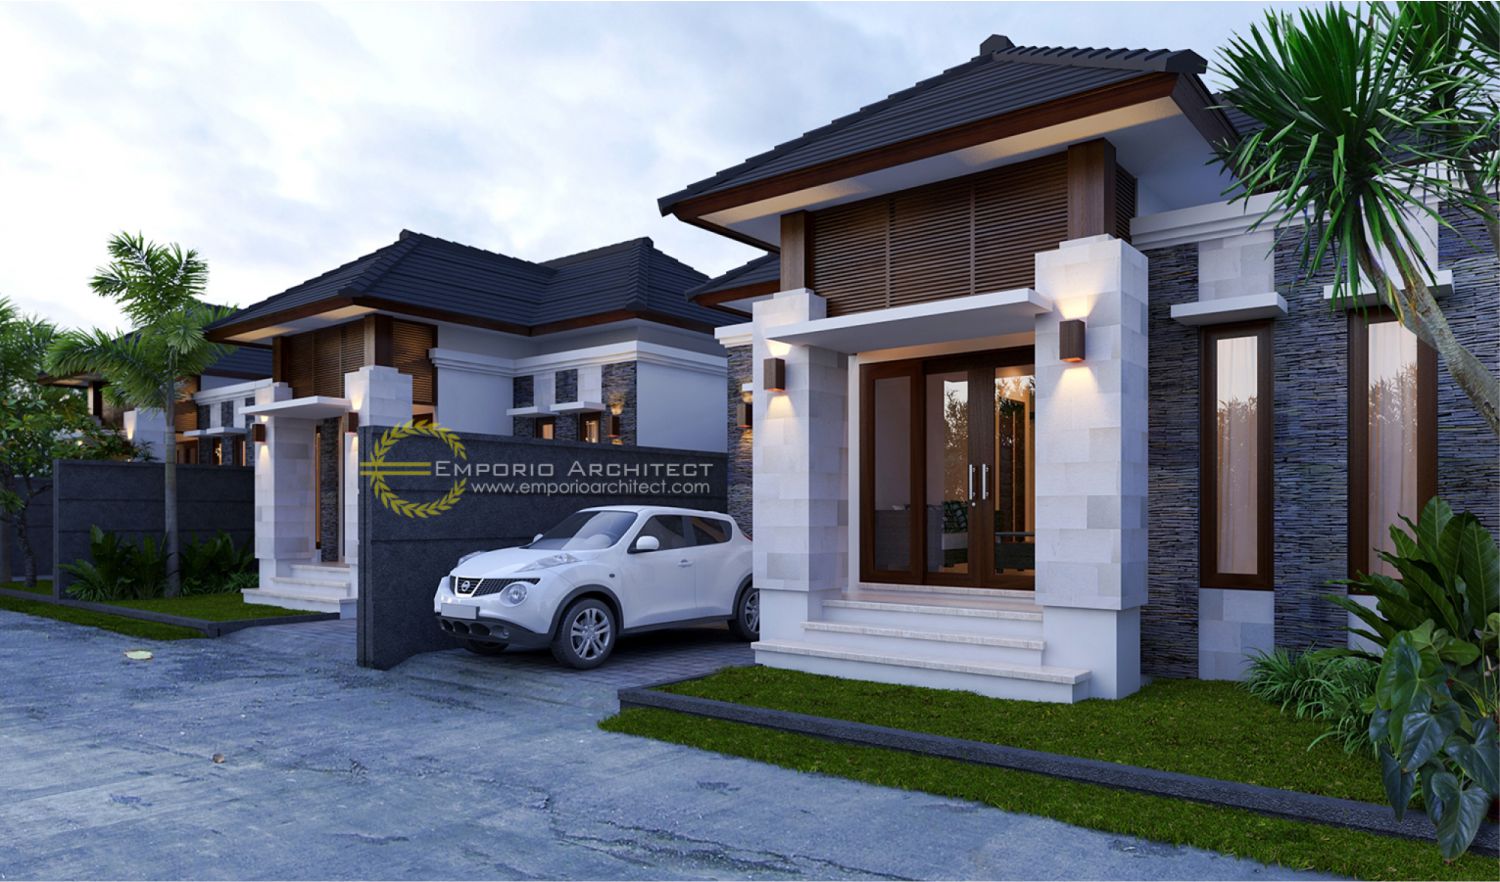 Desain Rumah Bapak Dasrul Jasa Arsitek Desain Rumah Villa Mewah